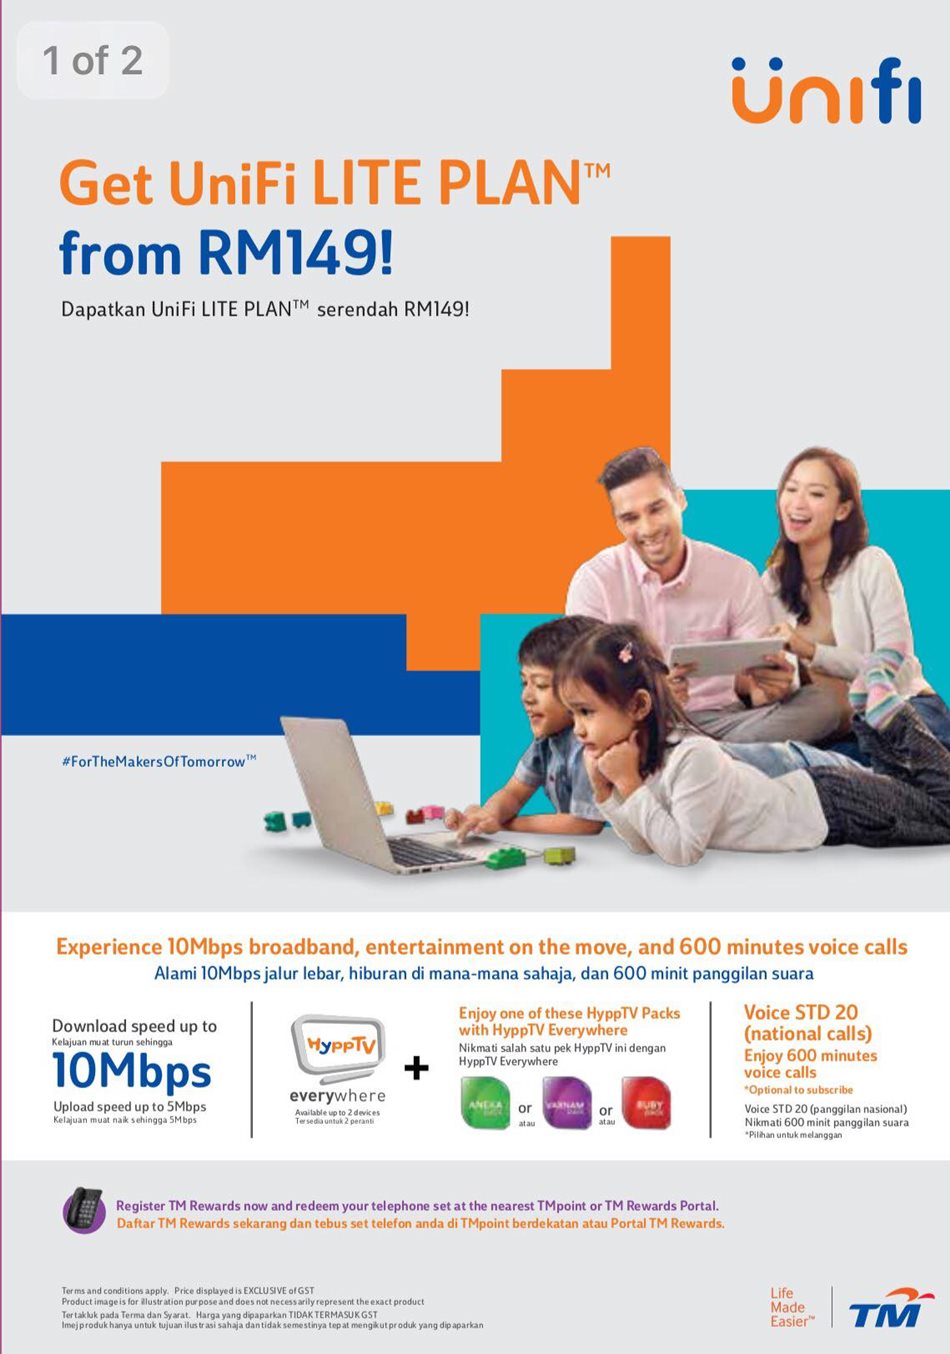 Unifi Lite Plan RM149 - 10Mbps download speed, No HyppTV set-top box? 1